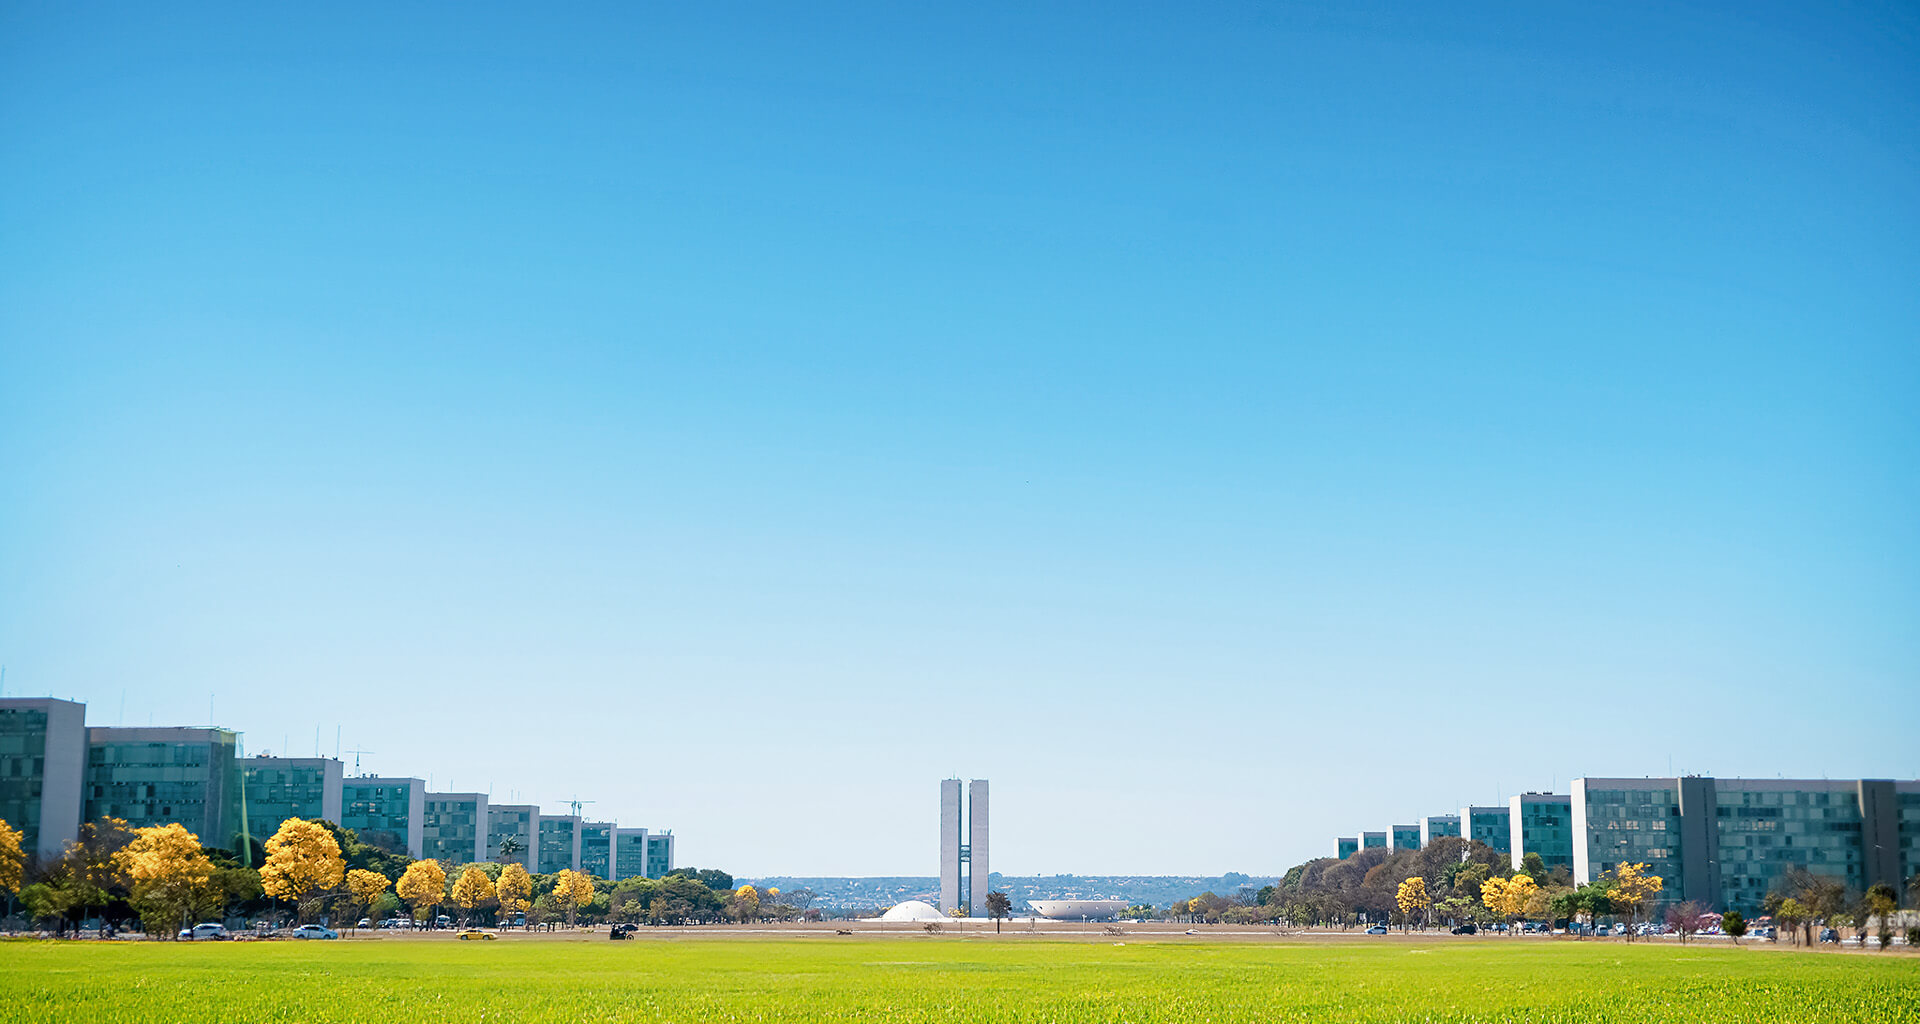 Praça dos Três Poderes - Brasília. Fotografia de Thandy Yung - Unsplash.com